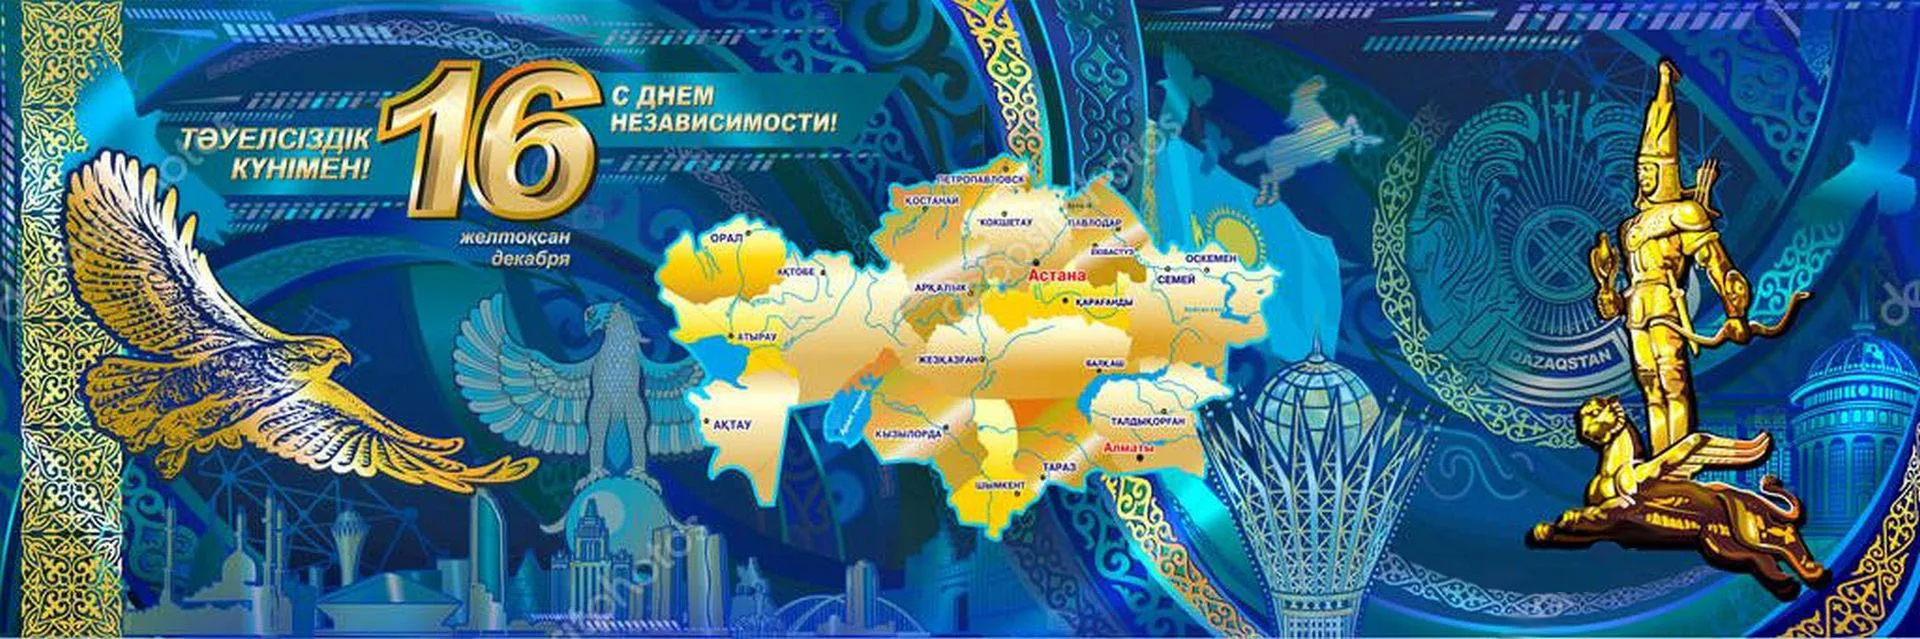 Фото День независимости Казахстана #67